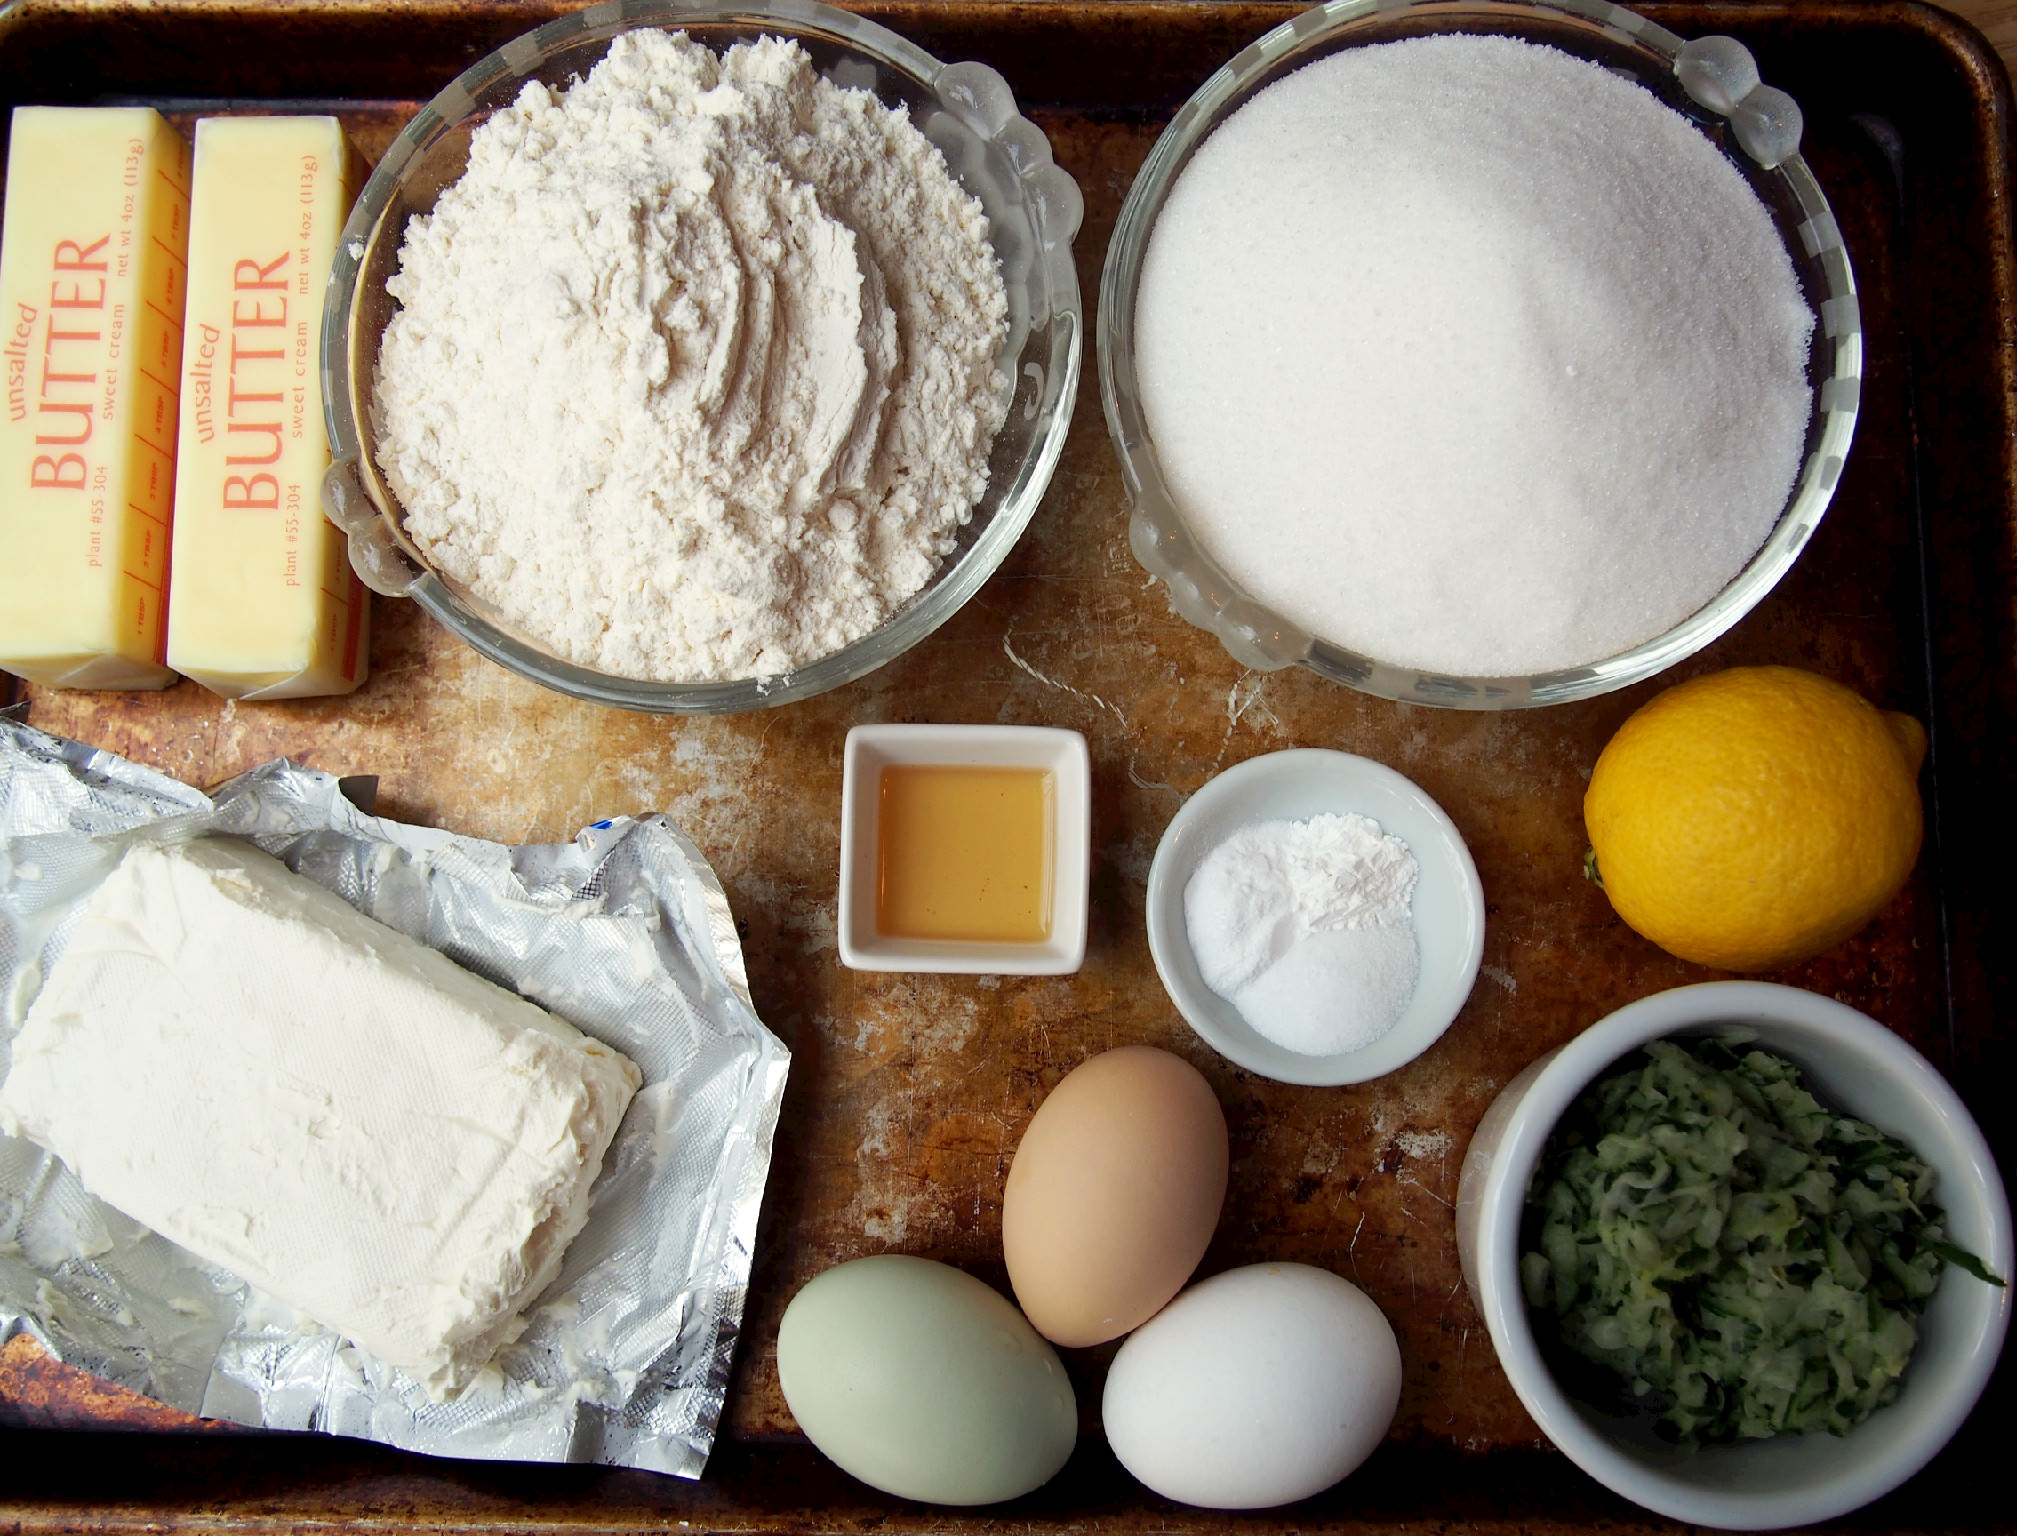 Ingredients to make zucchini bundt cake with lemon cream glaze